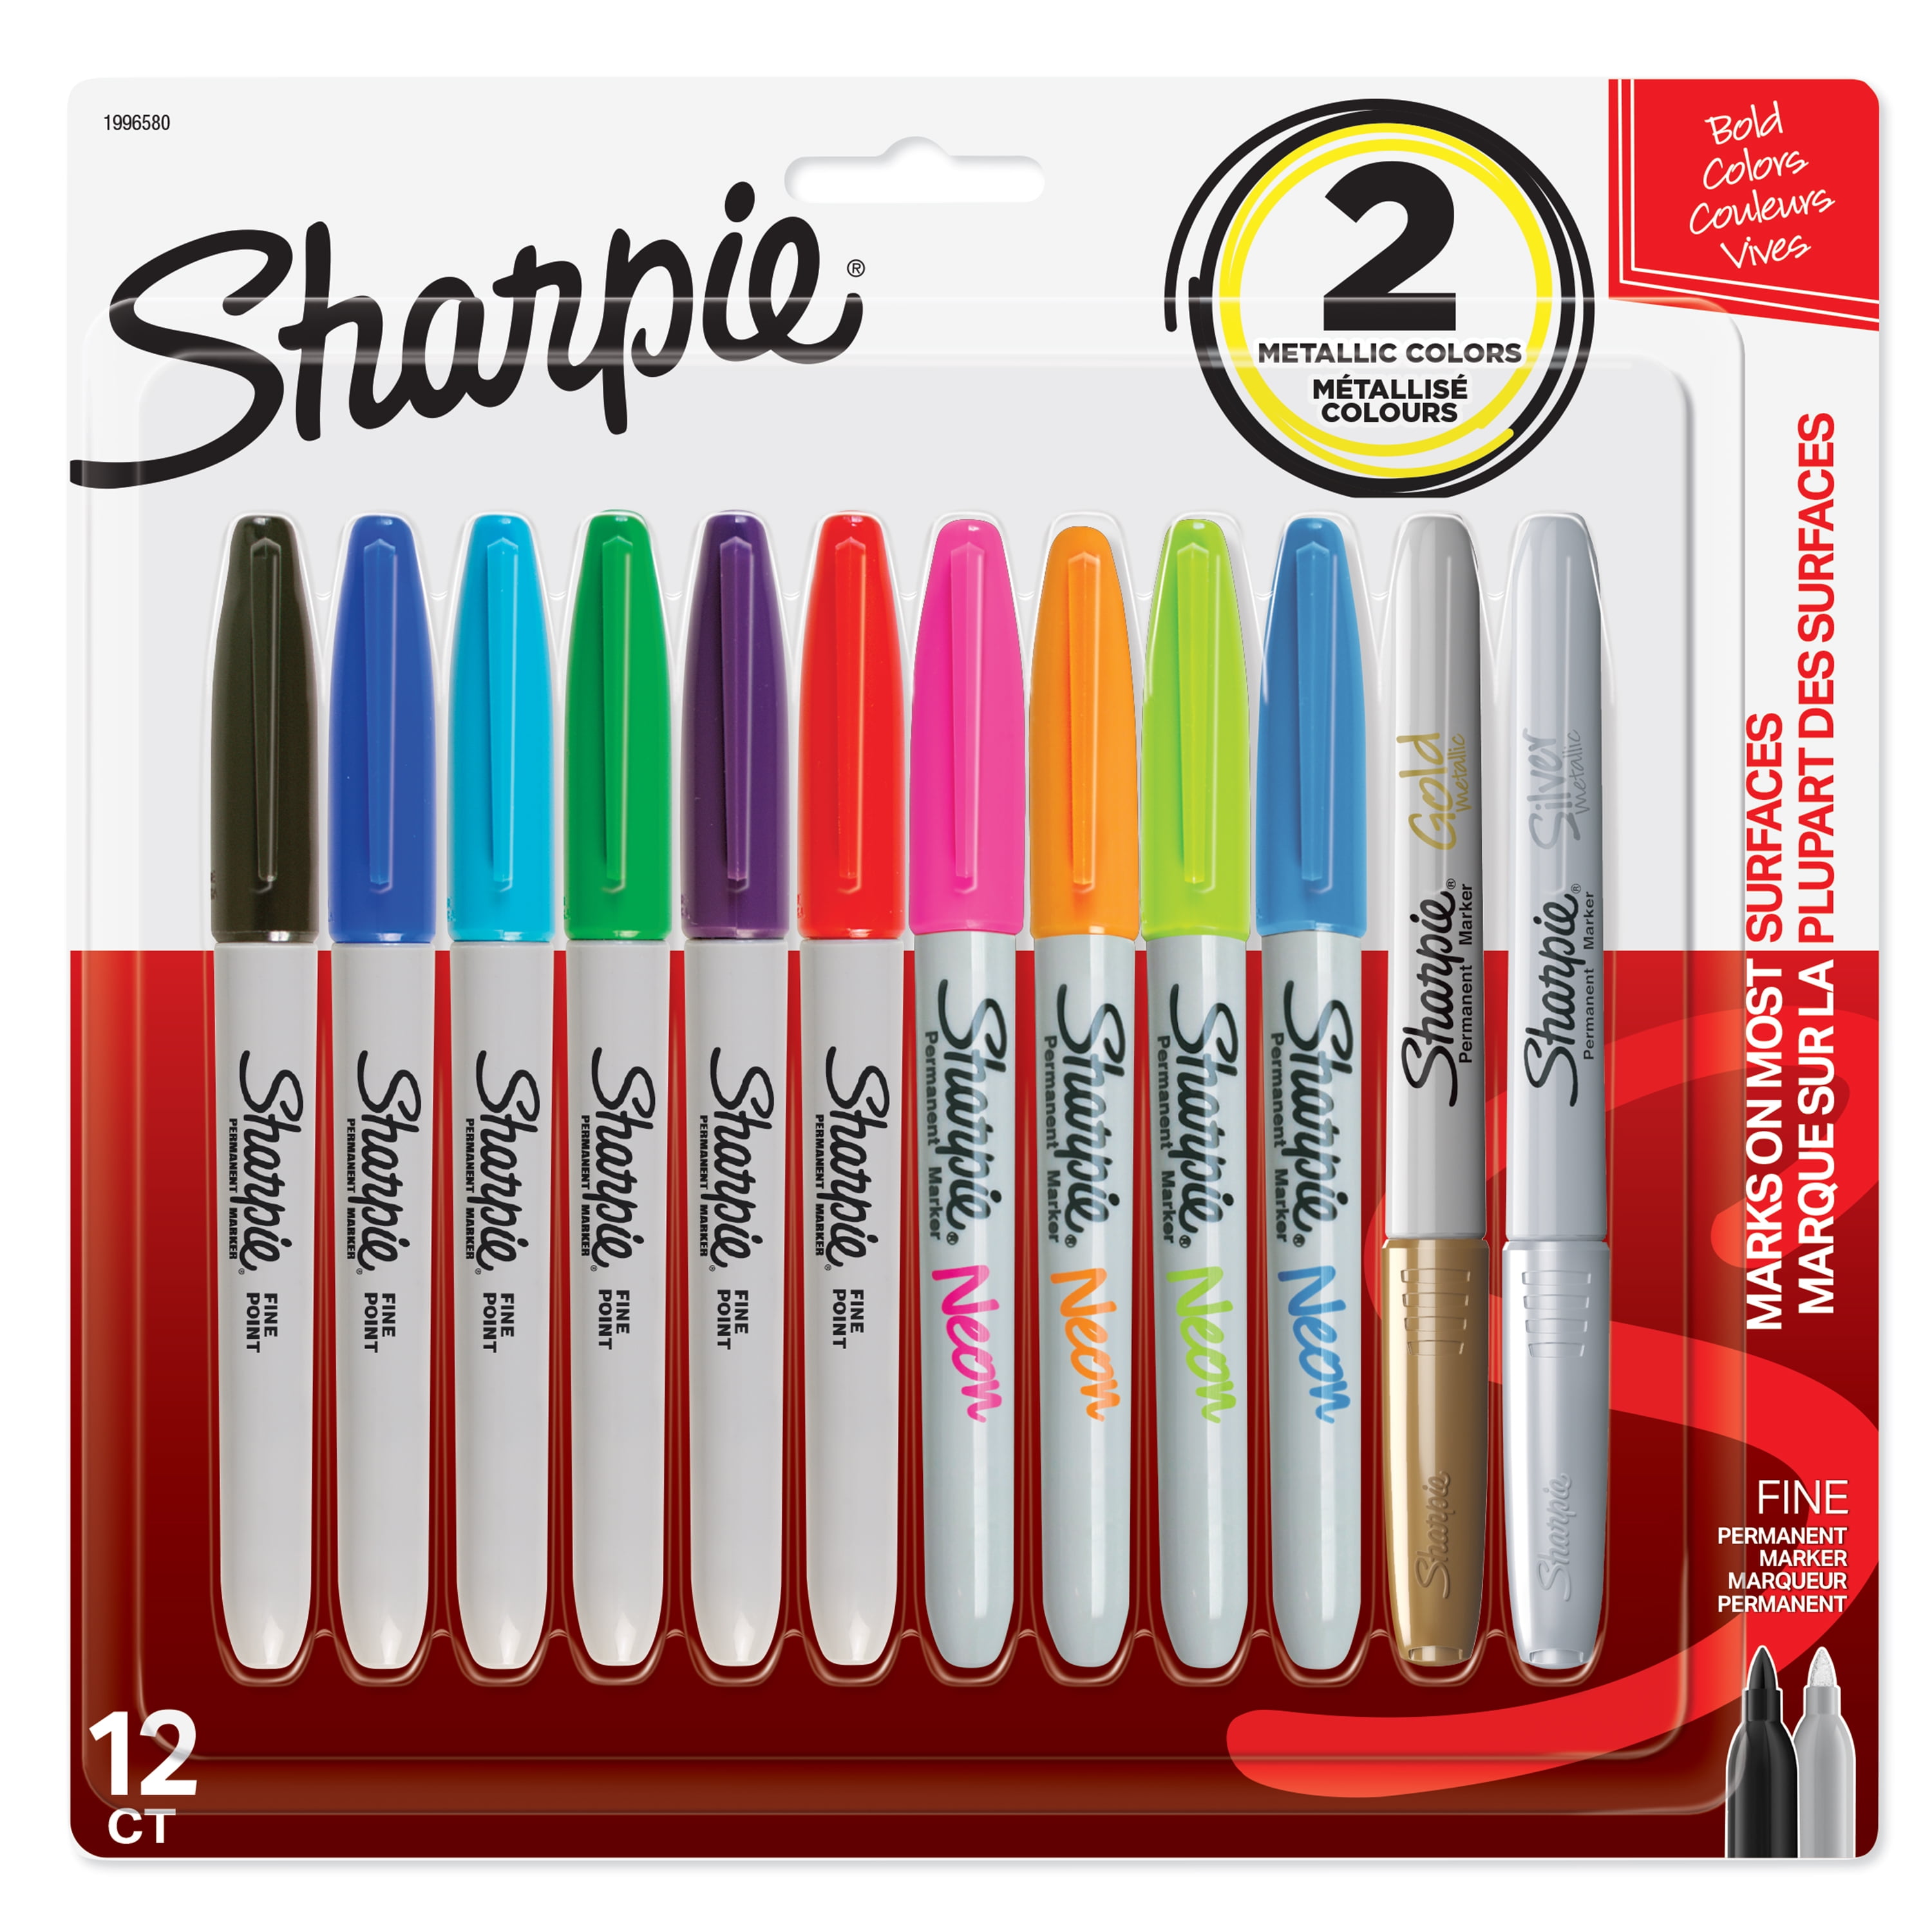 SALE 2 x Sharpie Fine Point Tip Permanent Marker Pens Assorted Colours 